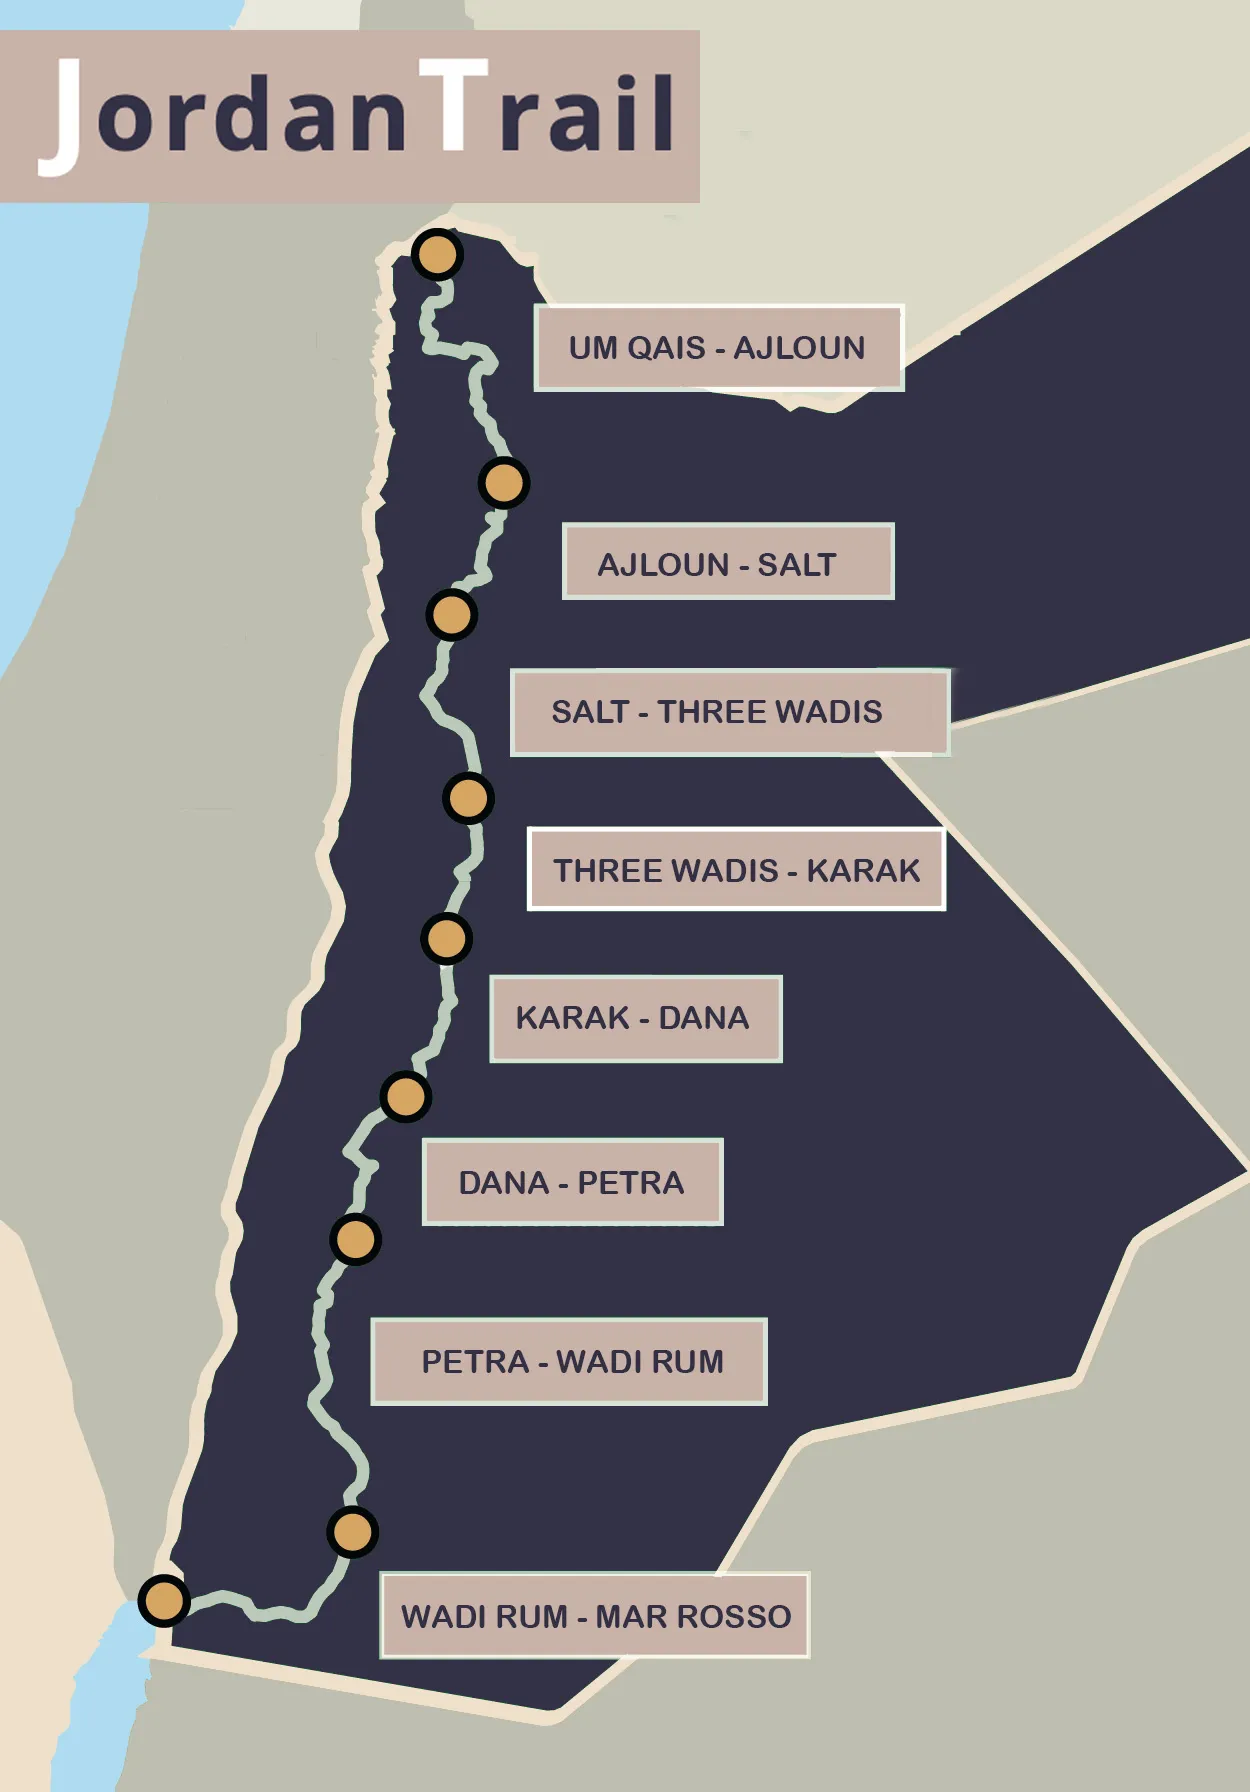 Mappa del Jordan Trail